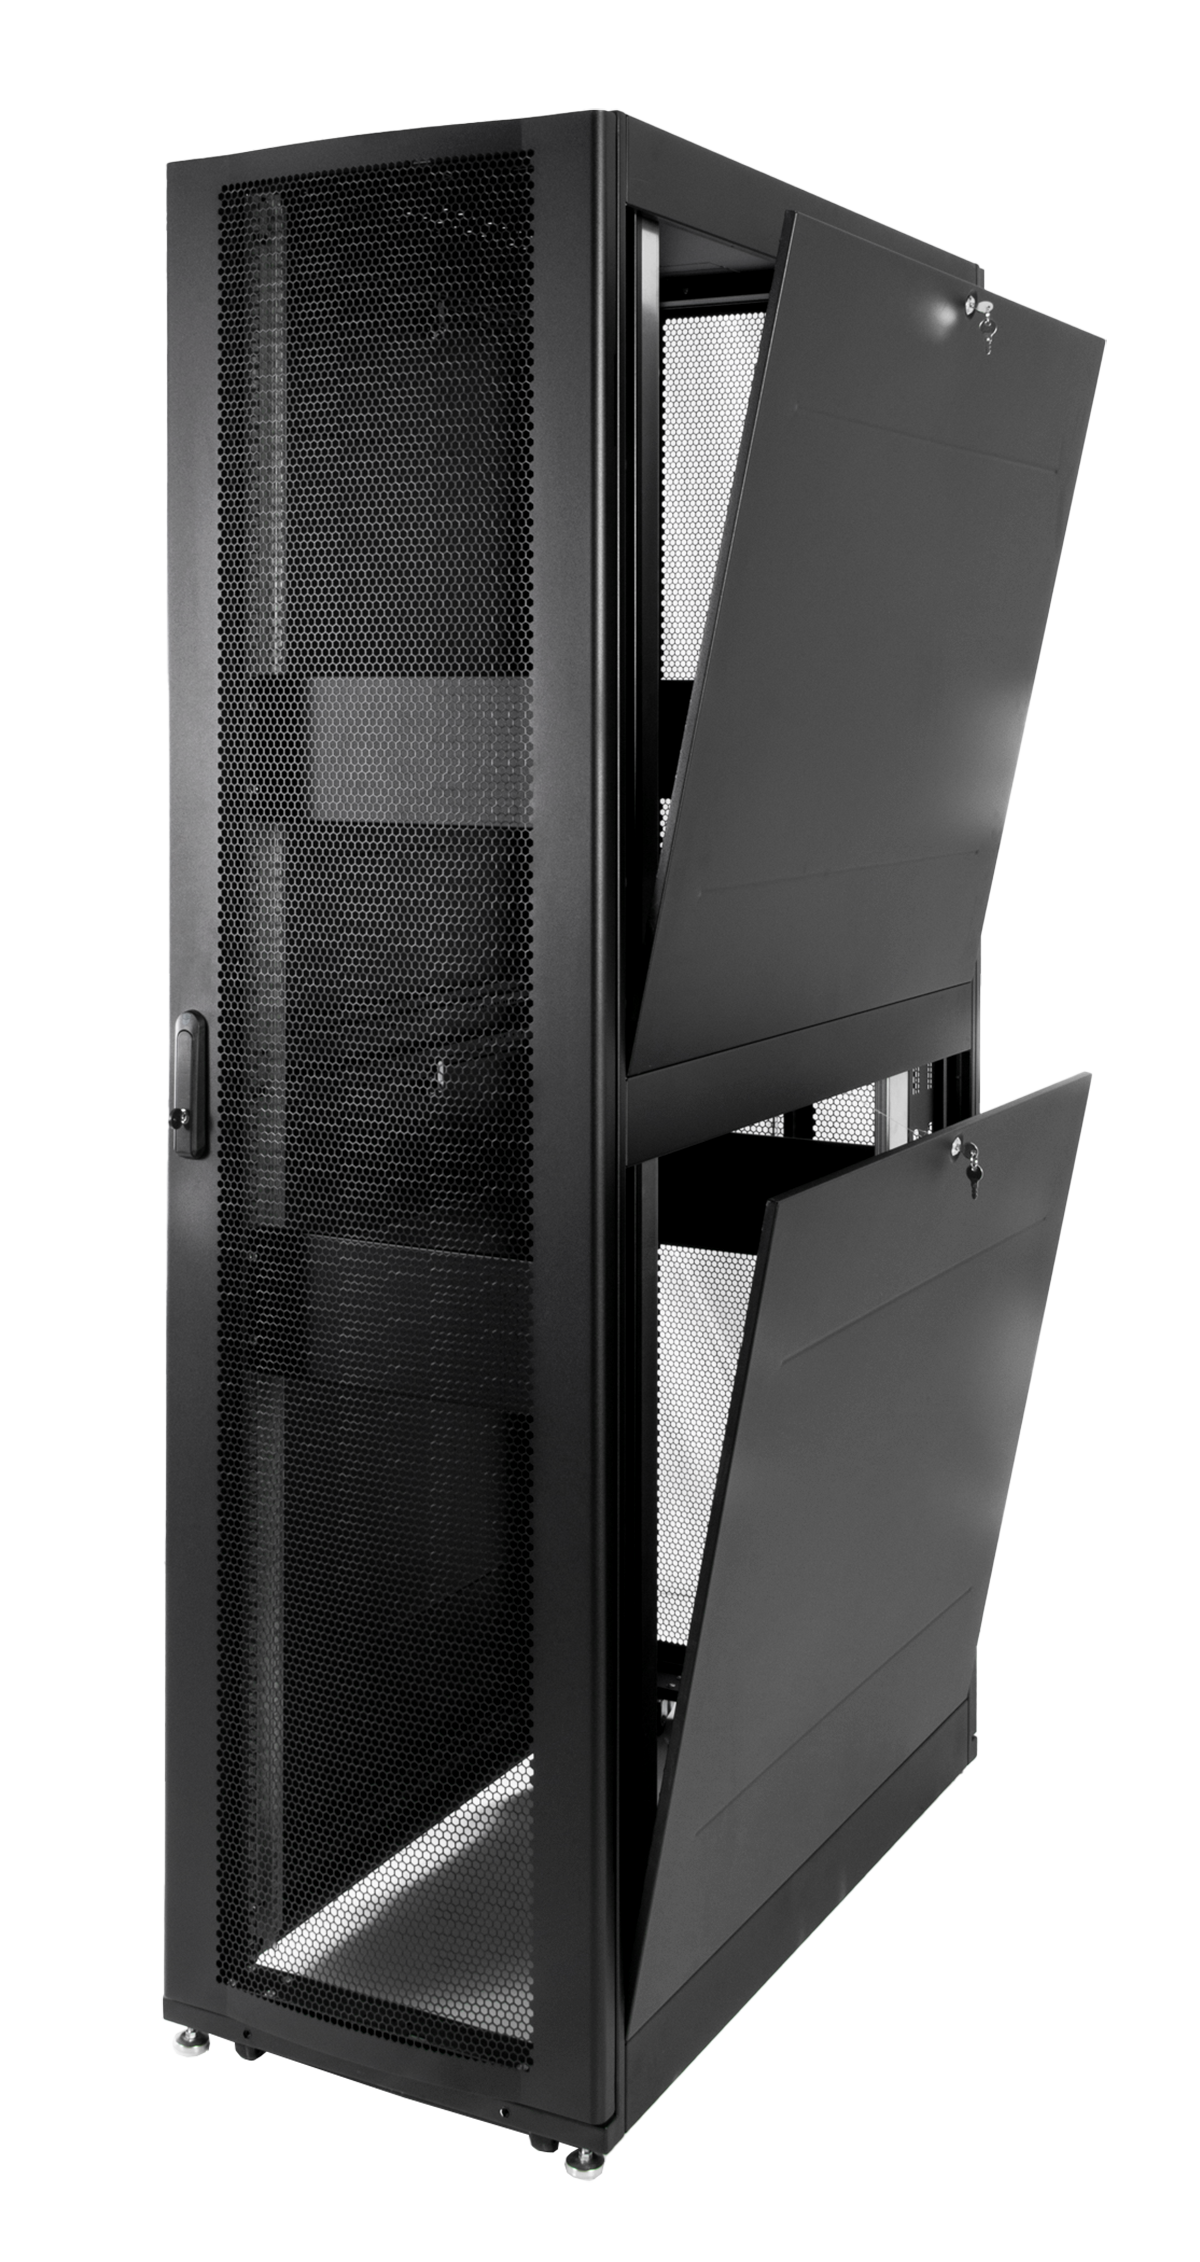 Шкаф серверный ПРОФ напольный 42U (600x1000) дверь перфор. 2 шт., черный, в сборе от ЦМО